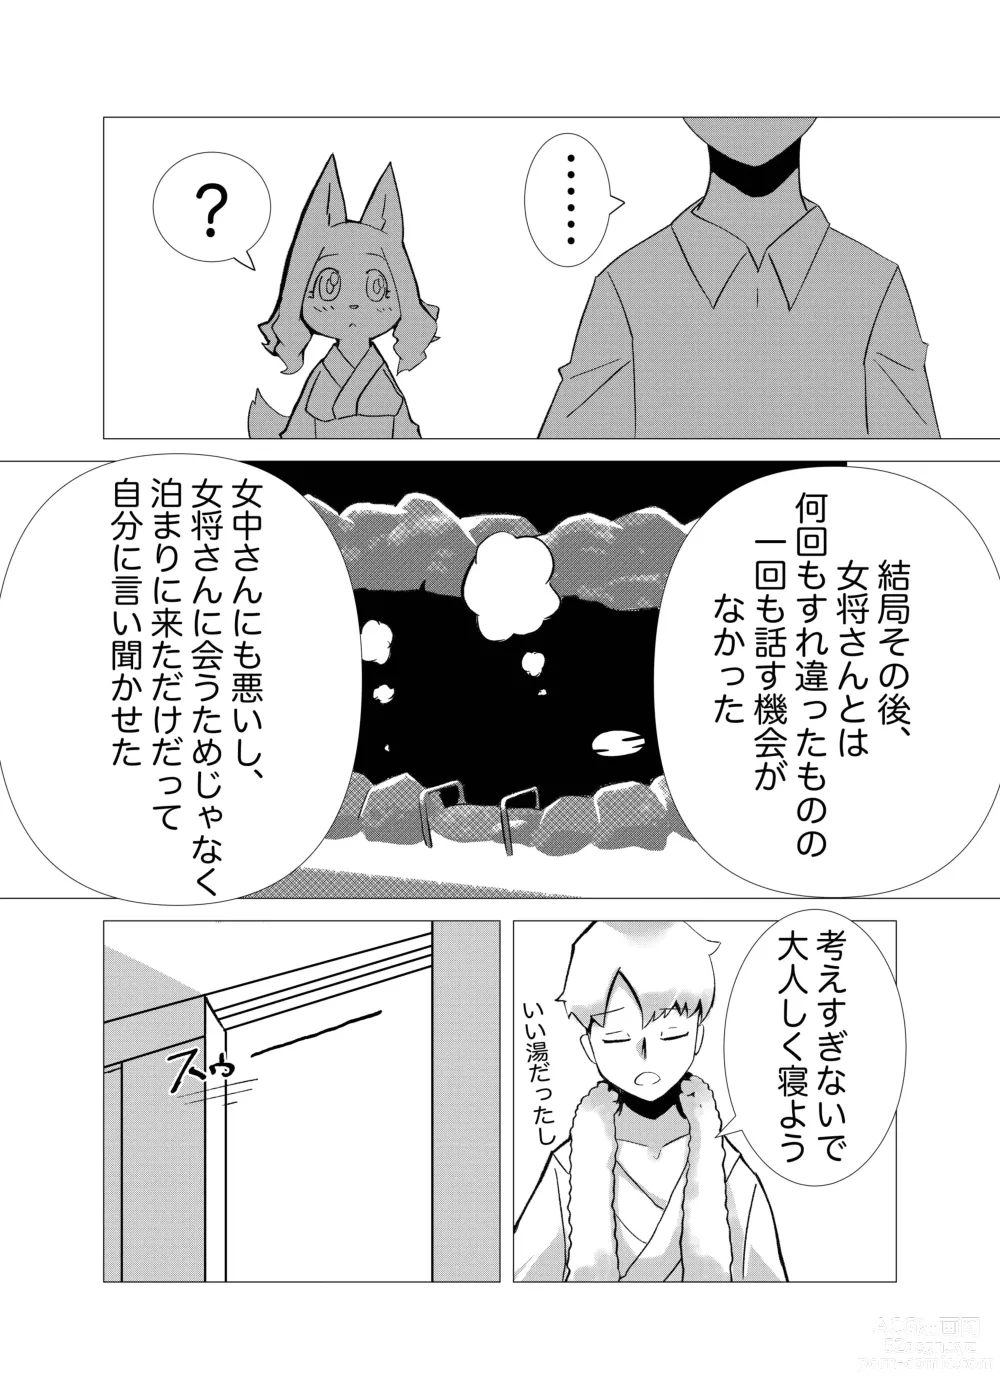 Page 11 of doujinshi Hana Kagerou